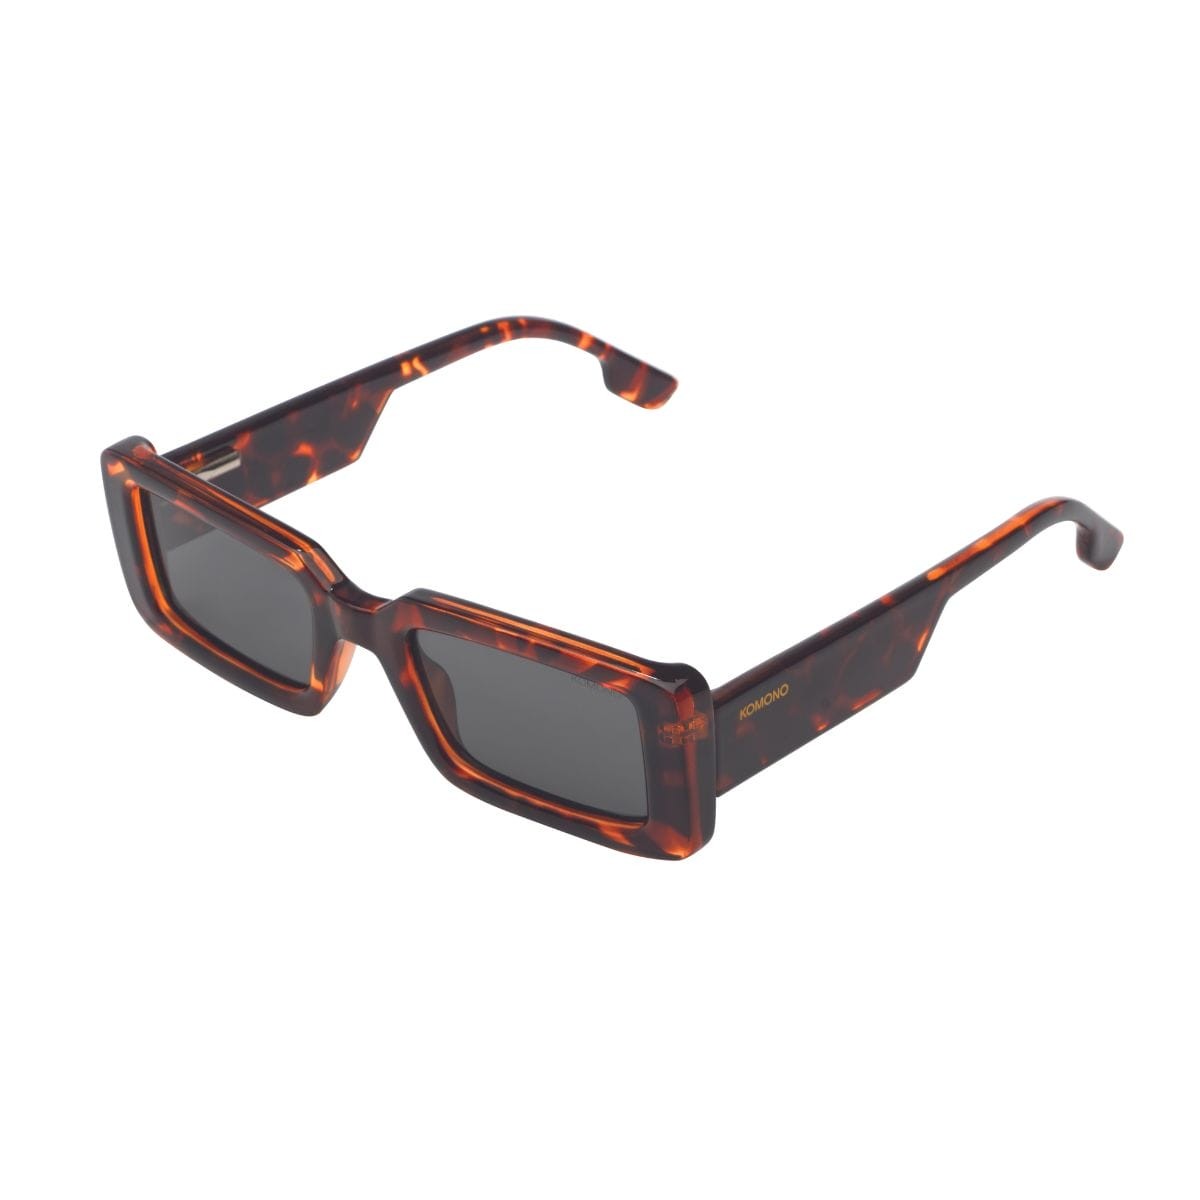 Komono - sunglasses - malick 6-12Y - havana